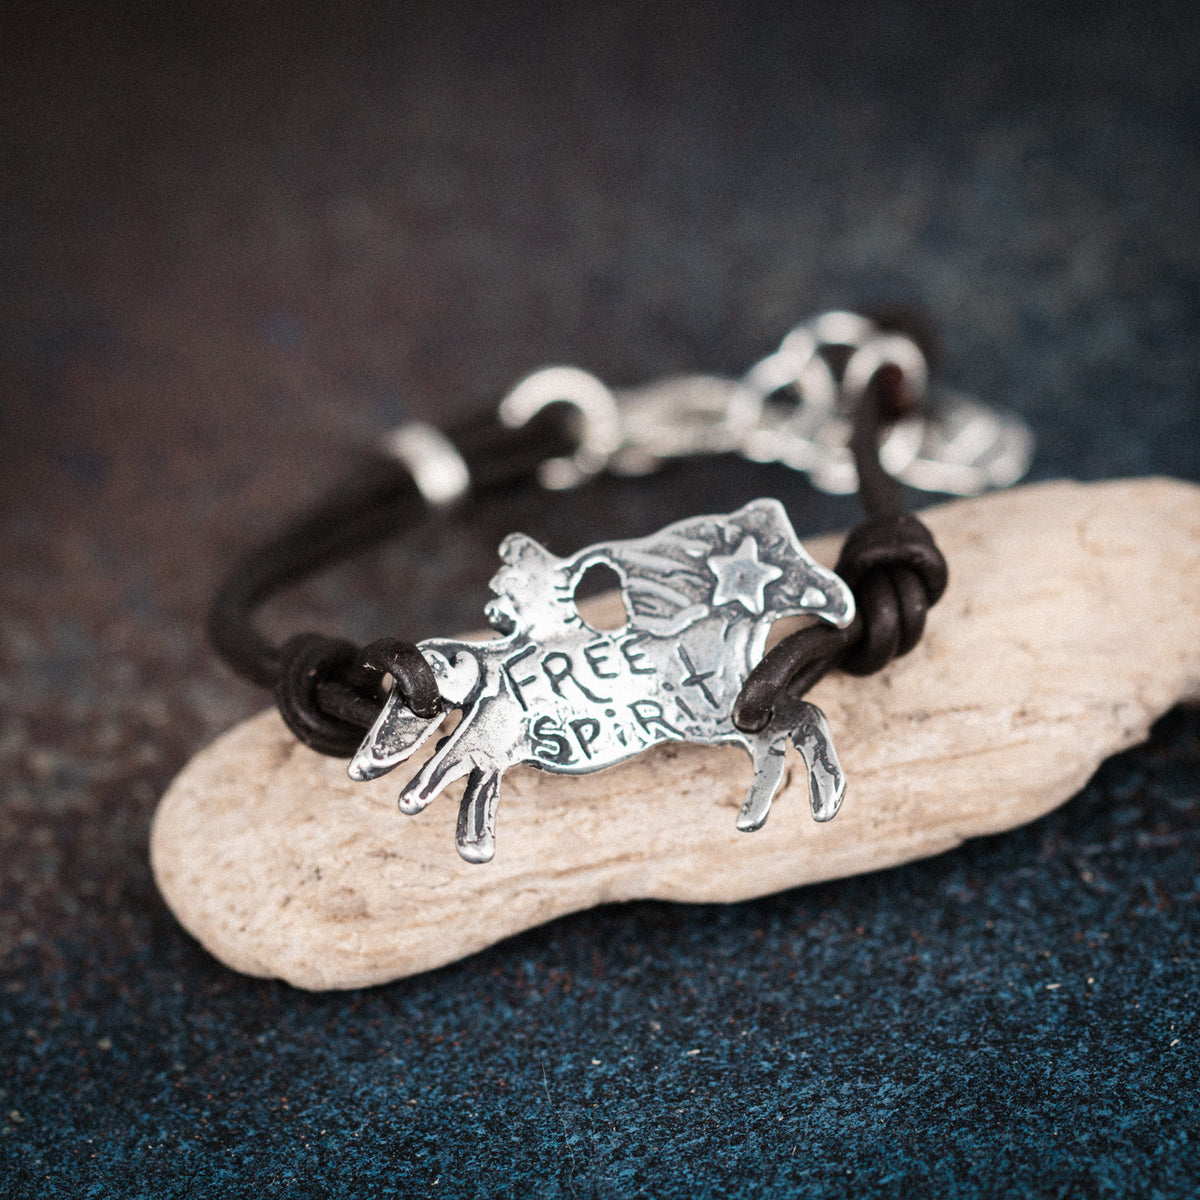 equine leather bracelet